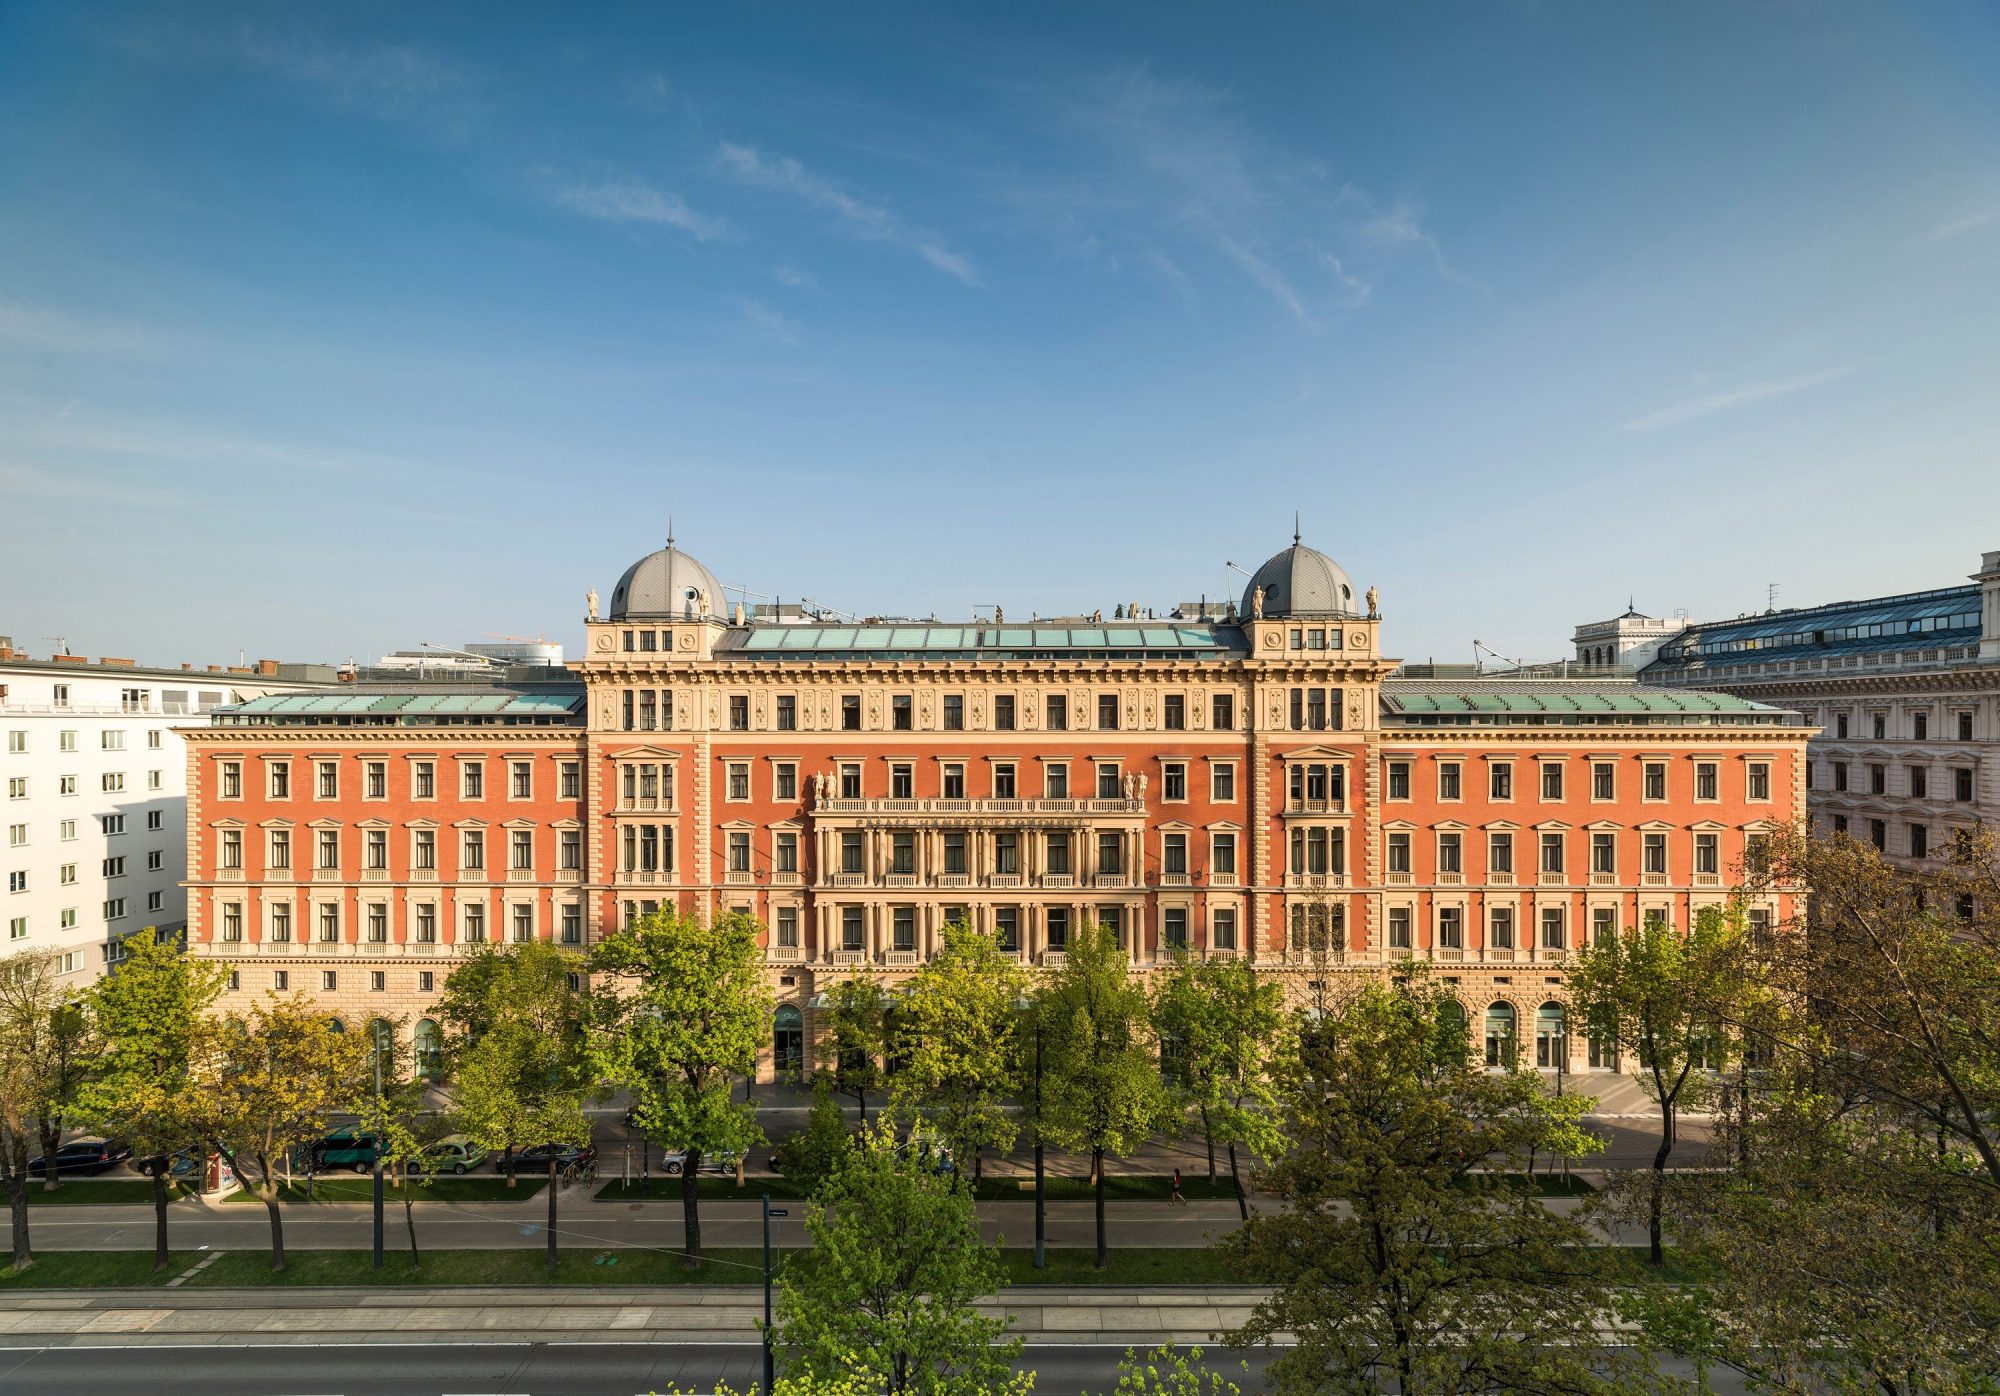 Anantara Palais Hansen Vienna Hotel is set to debut in March 2024